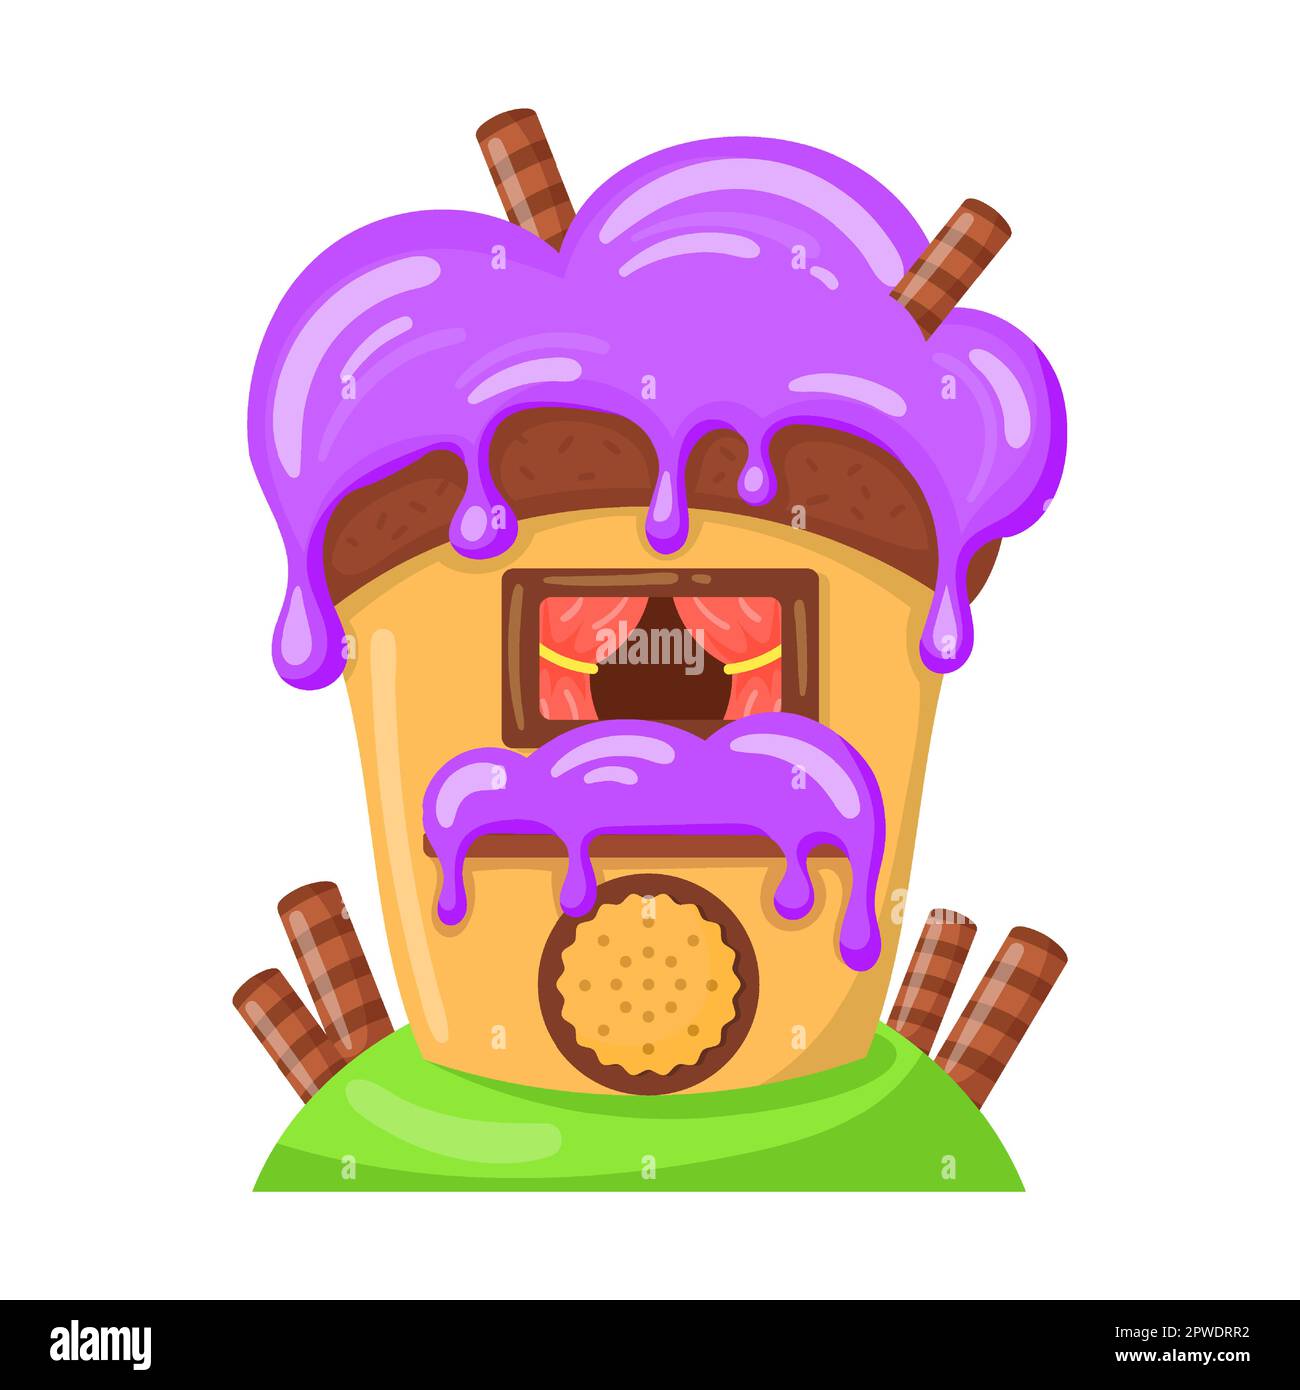 Kandie in Form eines Hauses, glasiert mit Waferrollen, Vektordarstellung. Fantasy Land Karamell und Schokolade Desserts, Cupcakes, Kekse Stock Vektor